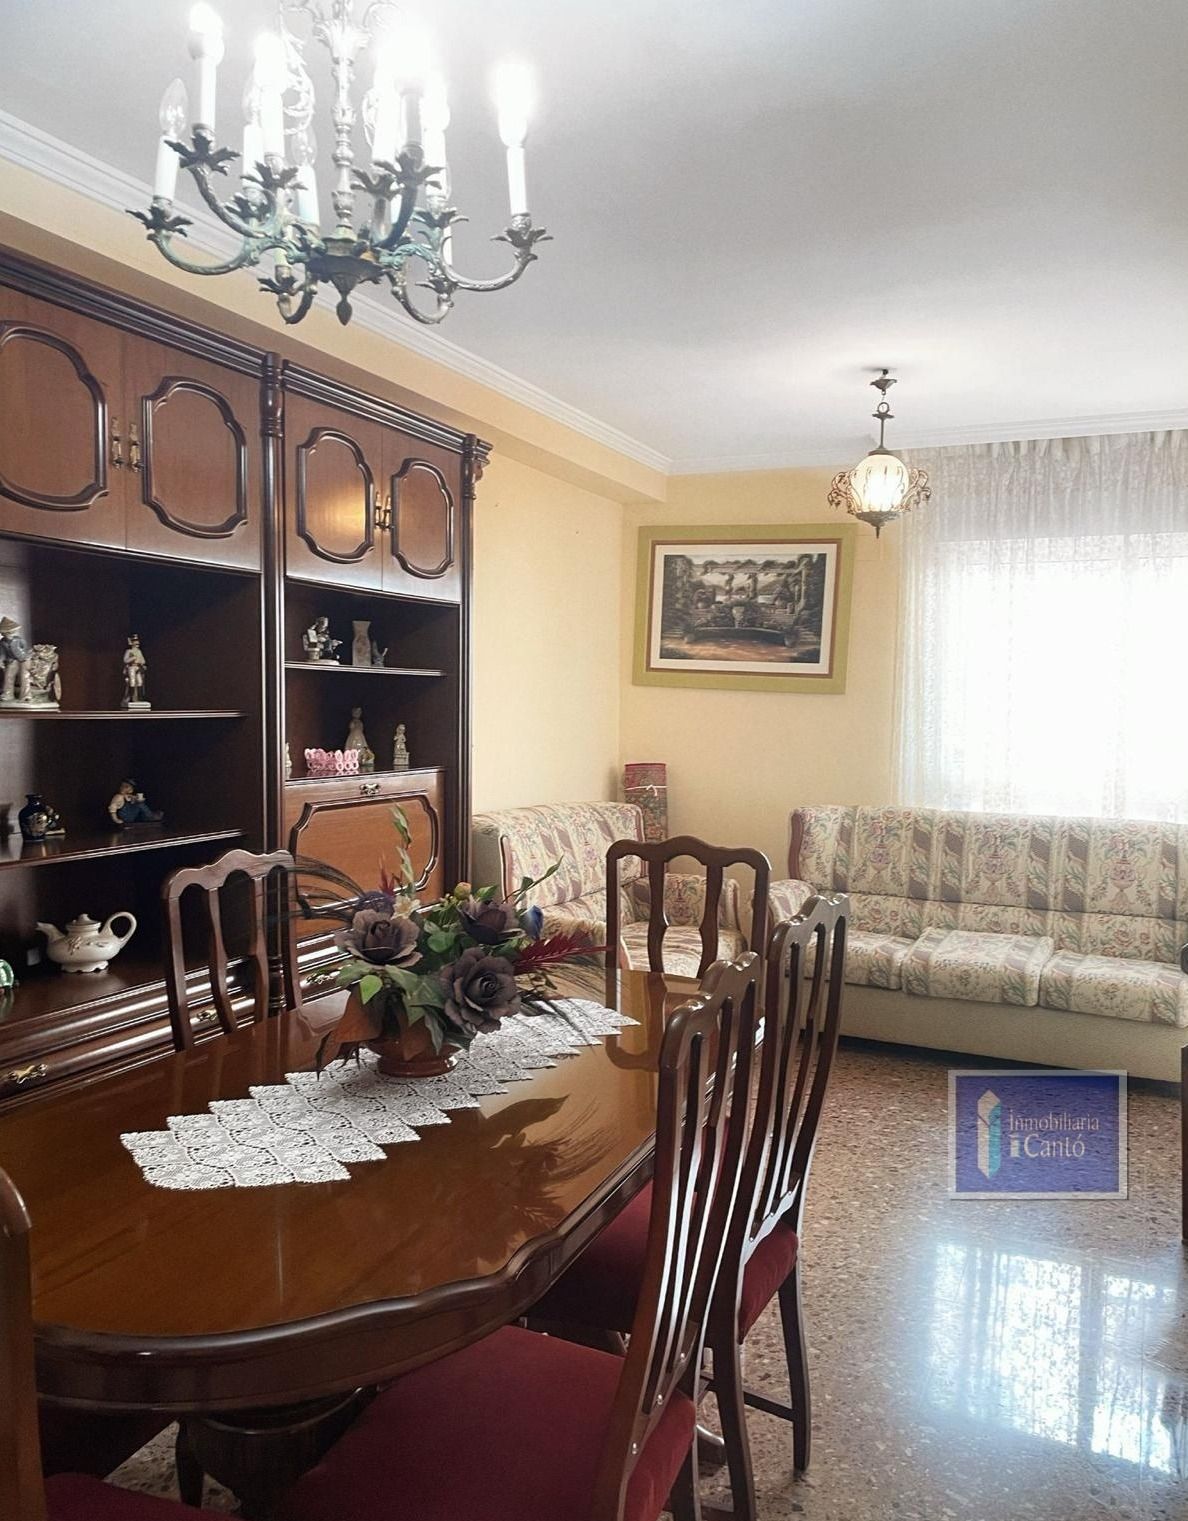 Appartement à vendre dans le quartier de El Camí de Alcoy